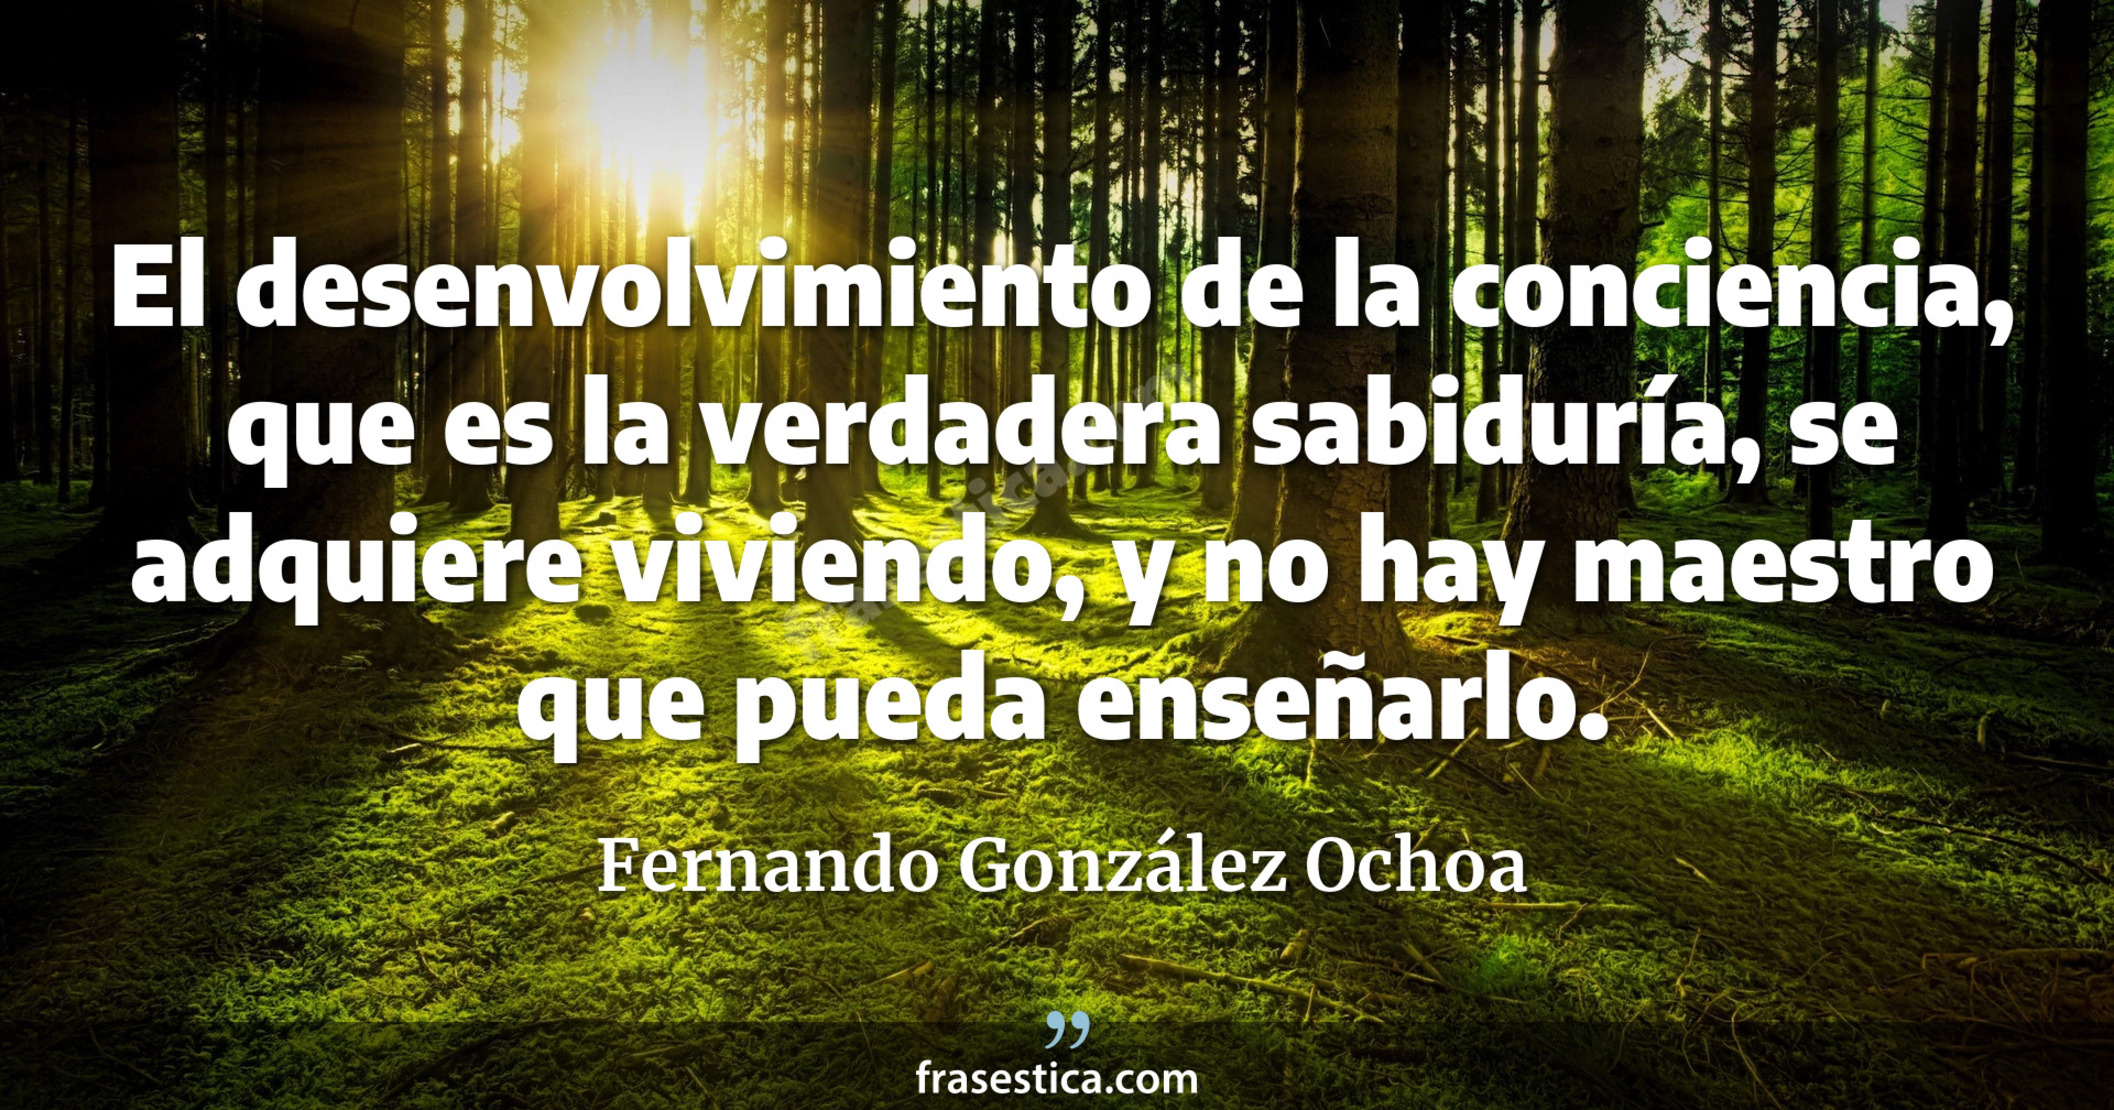 El desenvolvimiento de la conciencia, que es la verdadera sabiduría, se adquiere viviendo, y no hay maestro que pueda enseñarlo. - Fernando González Ochoa